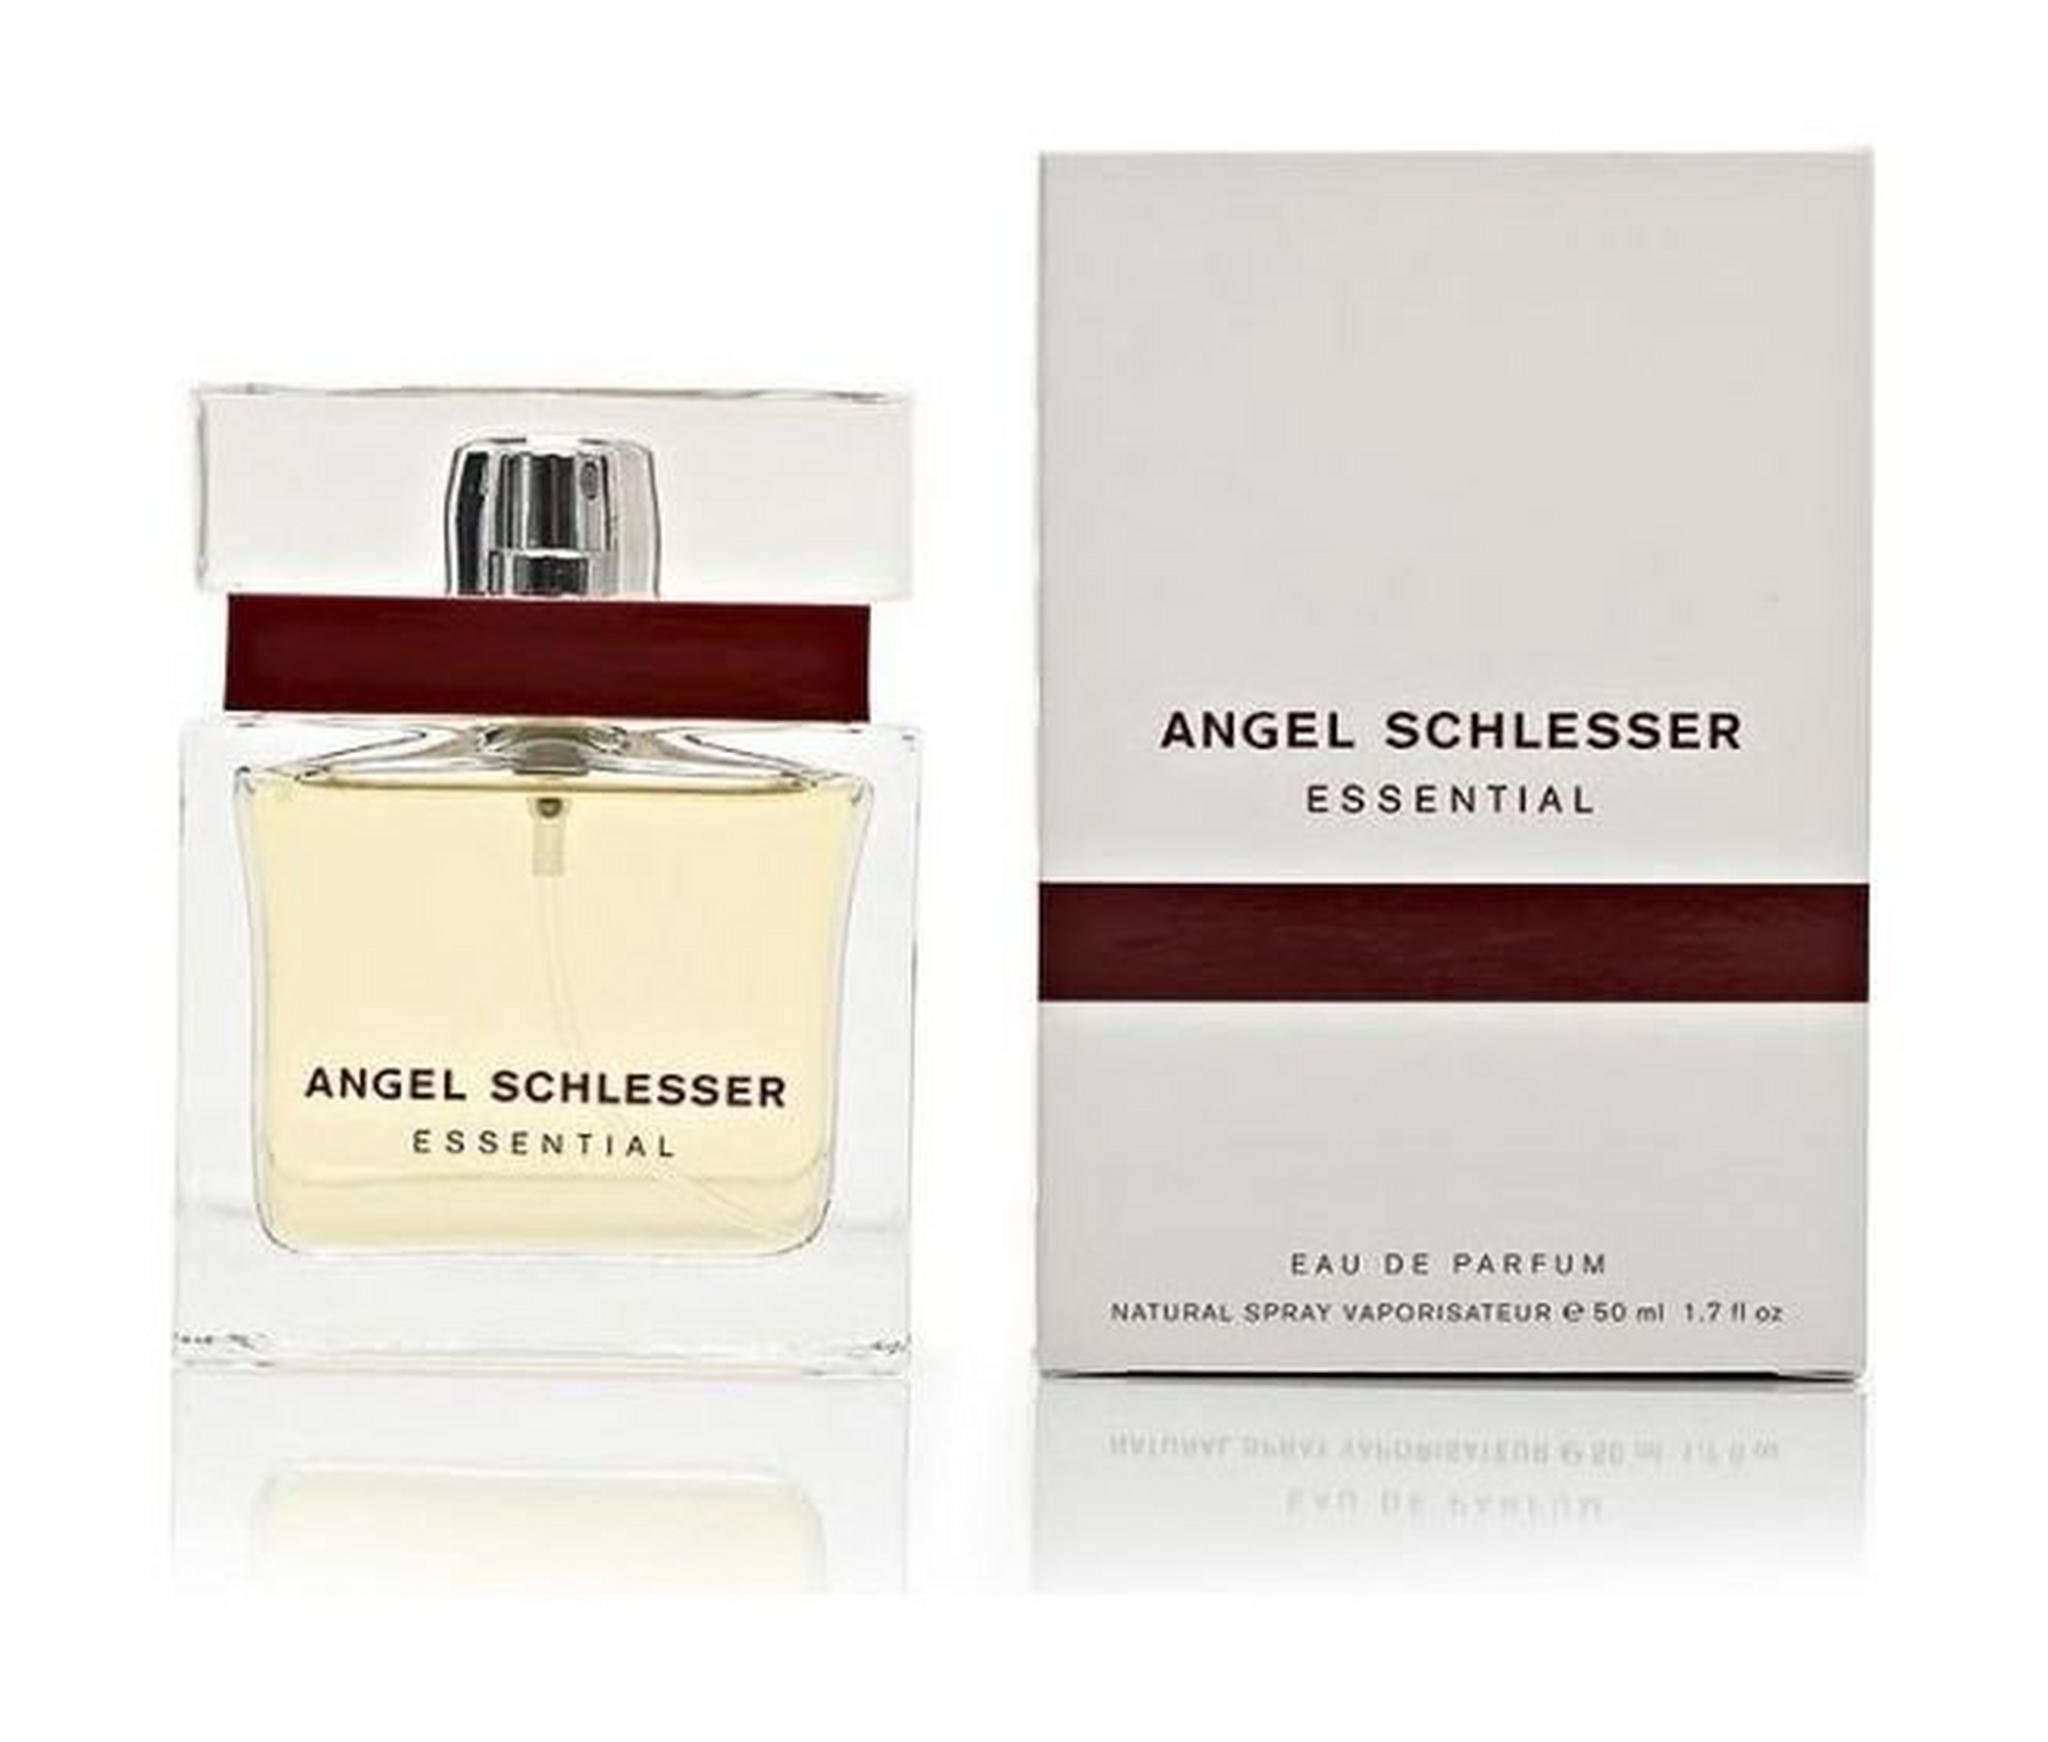 Angel Schlesser Essential by Angel Schlesser For Women 50ml Eau de Parfum